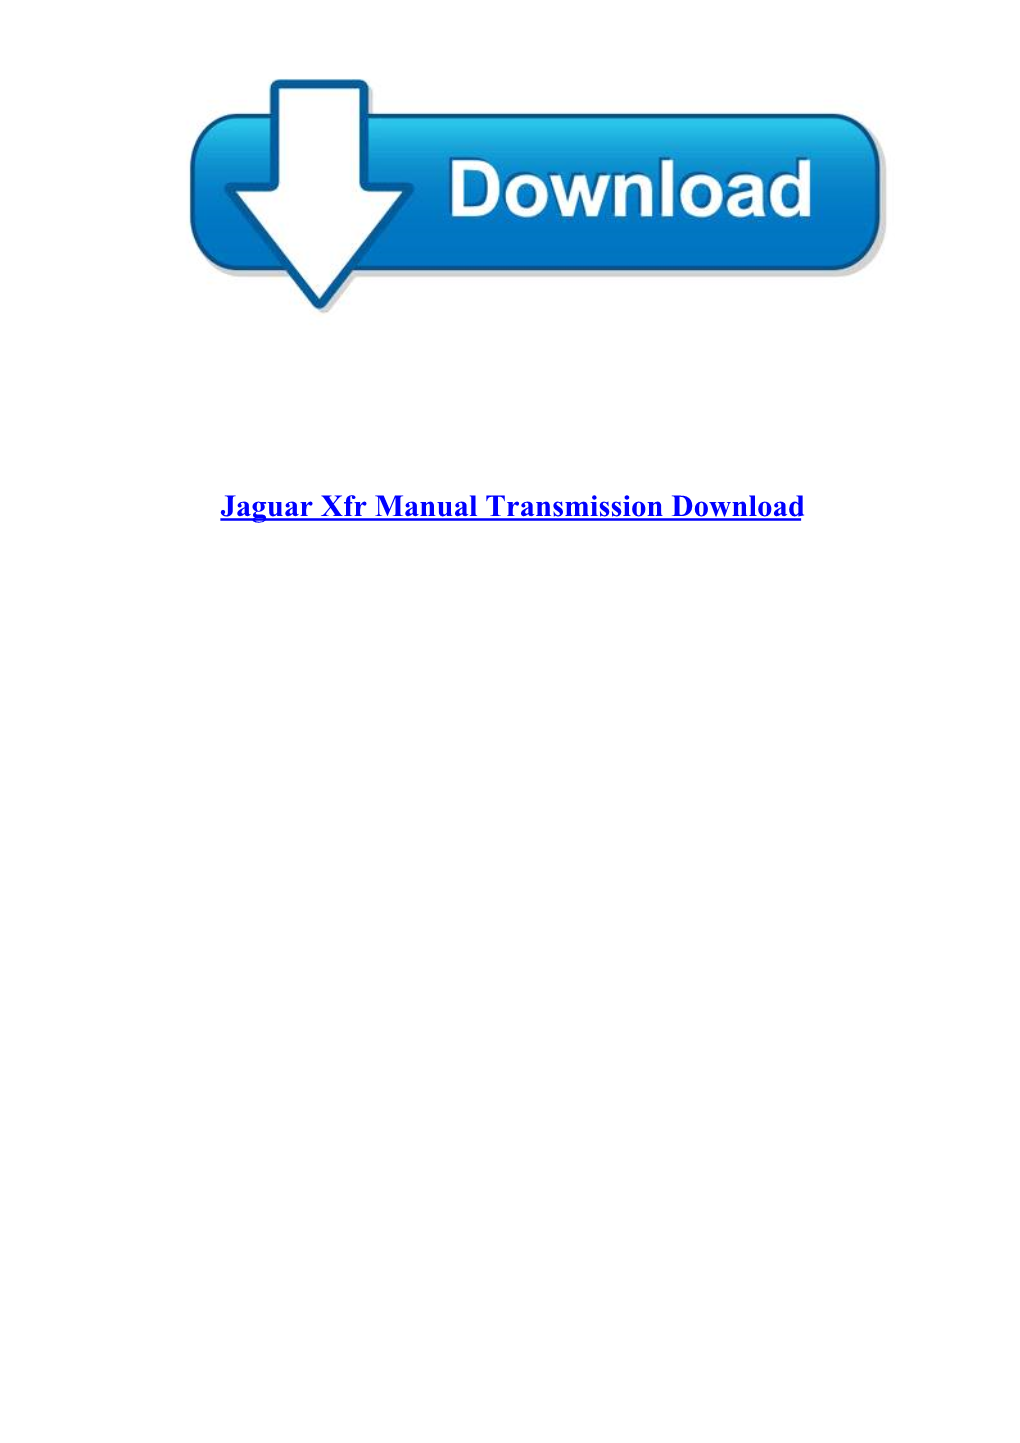 Jaguar Xfr Manual Transmission Download Jaguar Xfr Manual Transmission